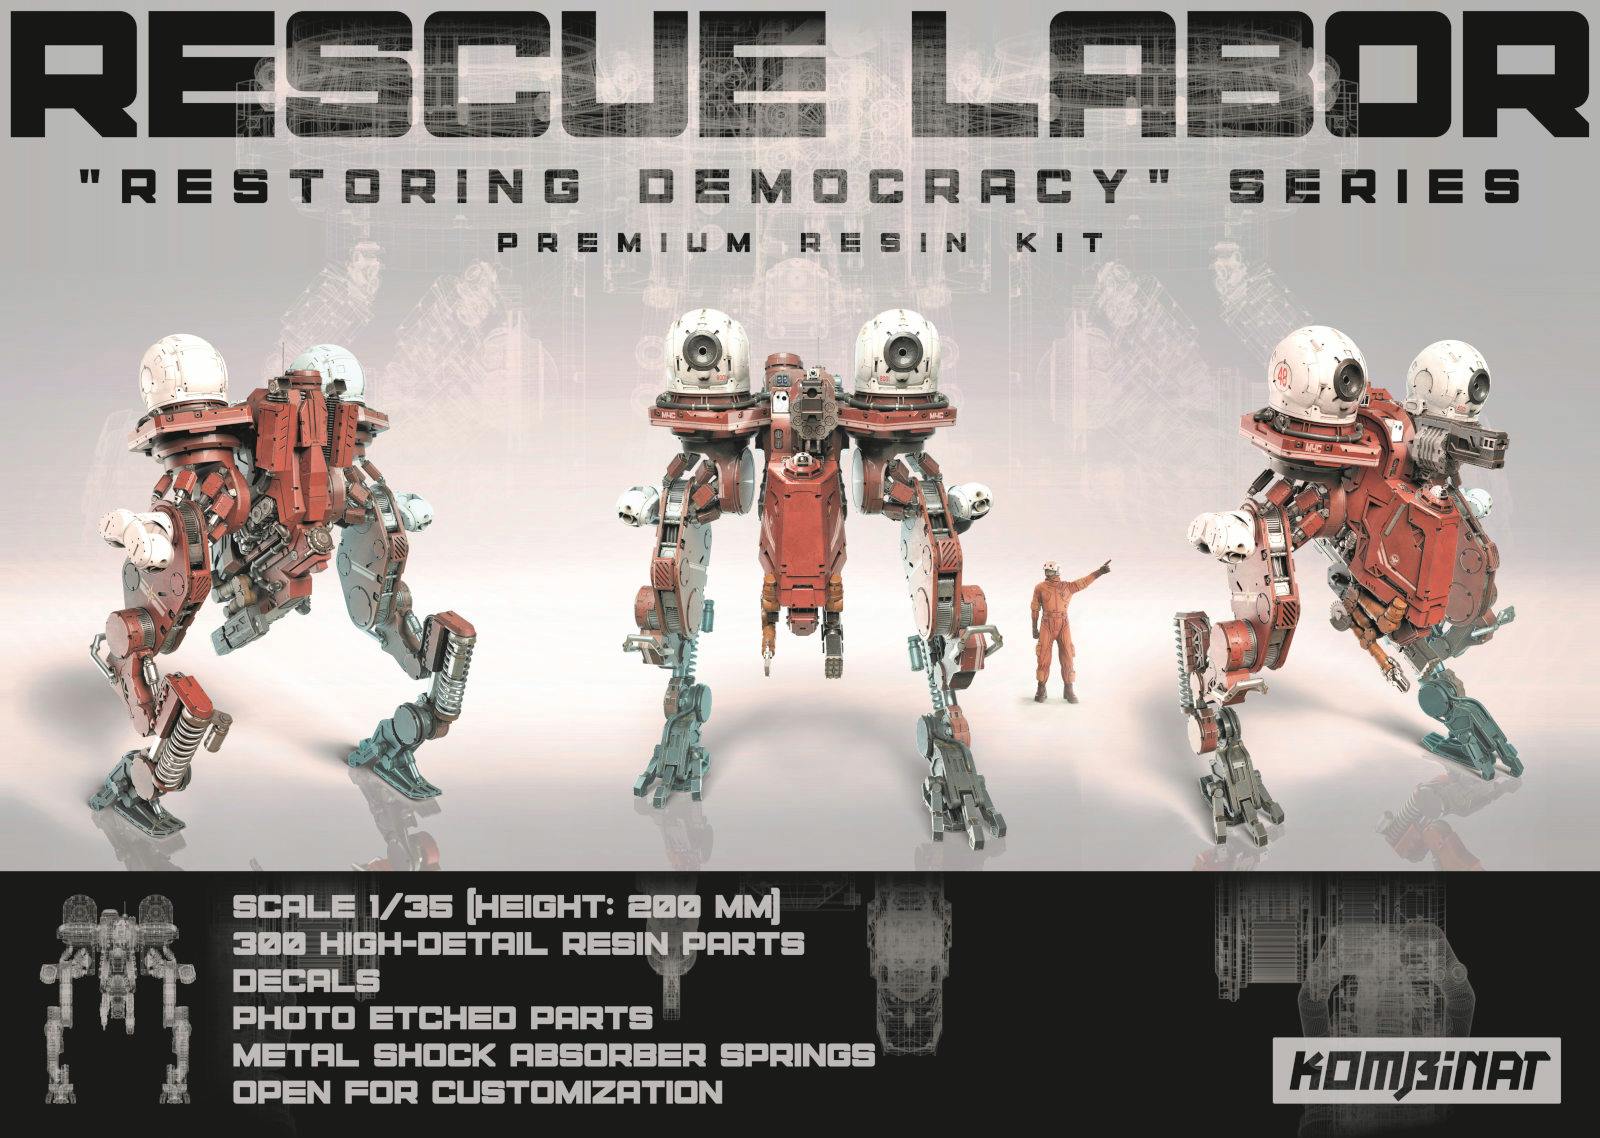 Rescue Labor Mech kit advertisement